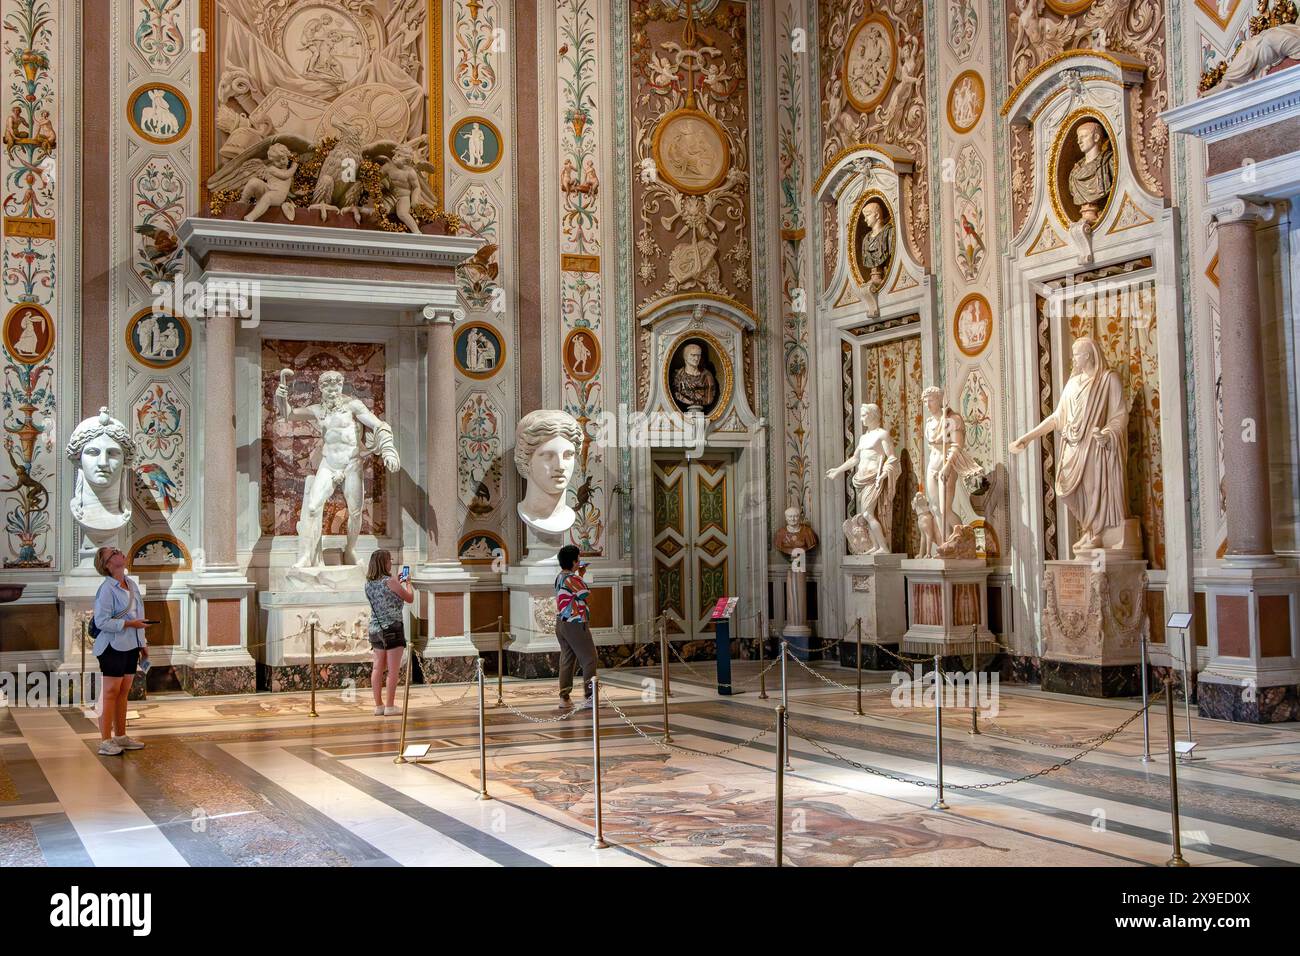 In der beeindruckenden Halle Mariano Rossi in der Galleria Borghese, Rom, Italien, bewundern Sie die Skulpturen und großen Büsten und andere Kunstwerke Stockfoto